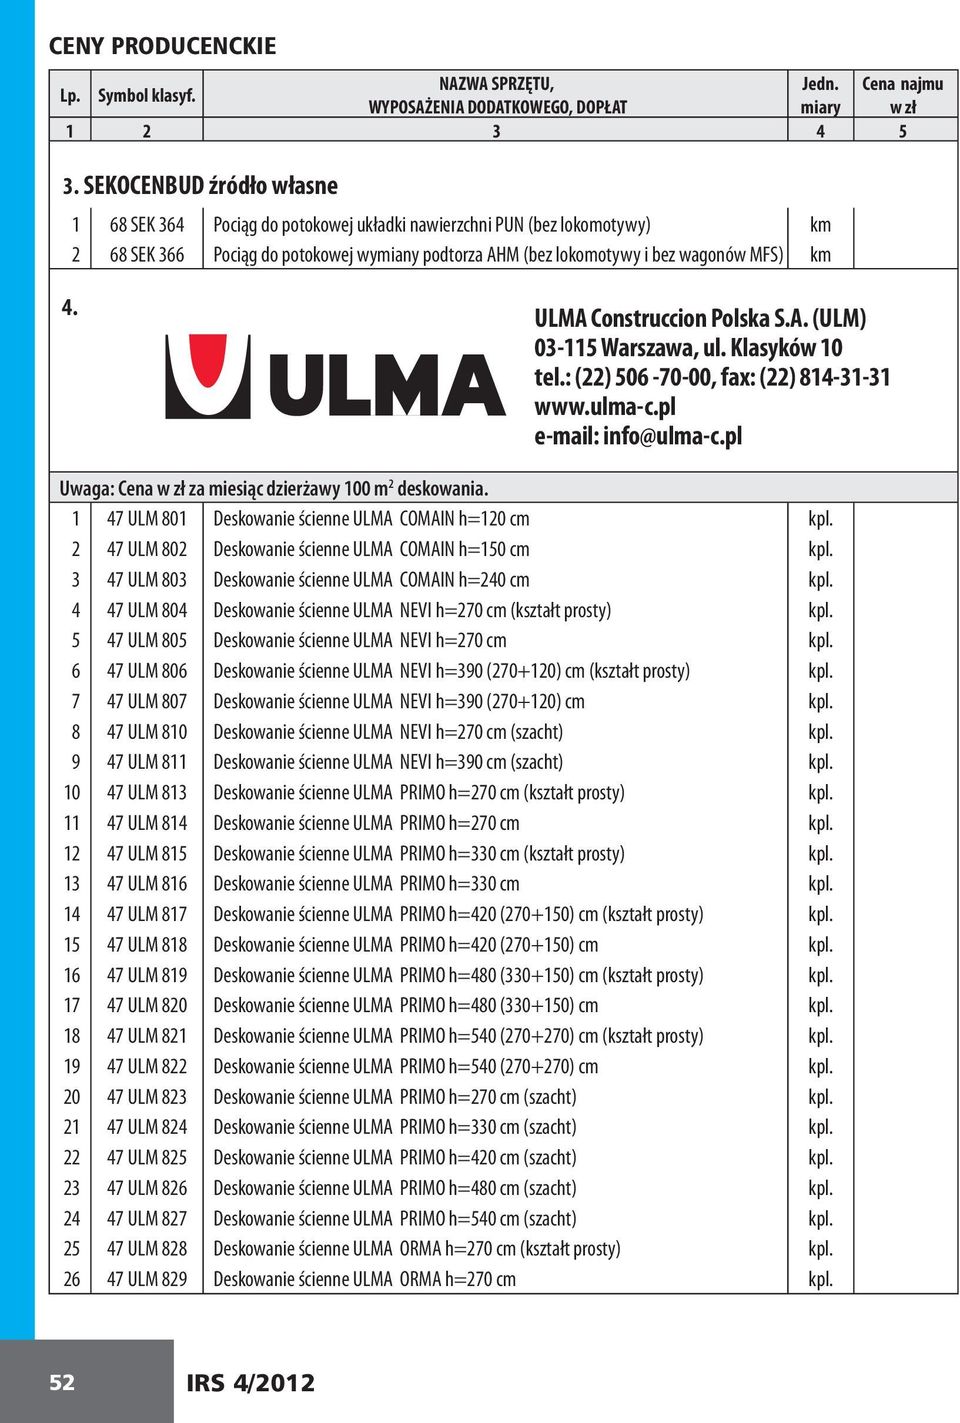 ULMA Construccion Polska S.A. (ULM) 03-115 Warszawa, ul. Klasyków 10 tel.: (22) 506-70-00, fax: (22) 814-31-31 www.ulma-c.pl e-mail: info@ulma-c.